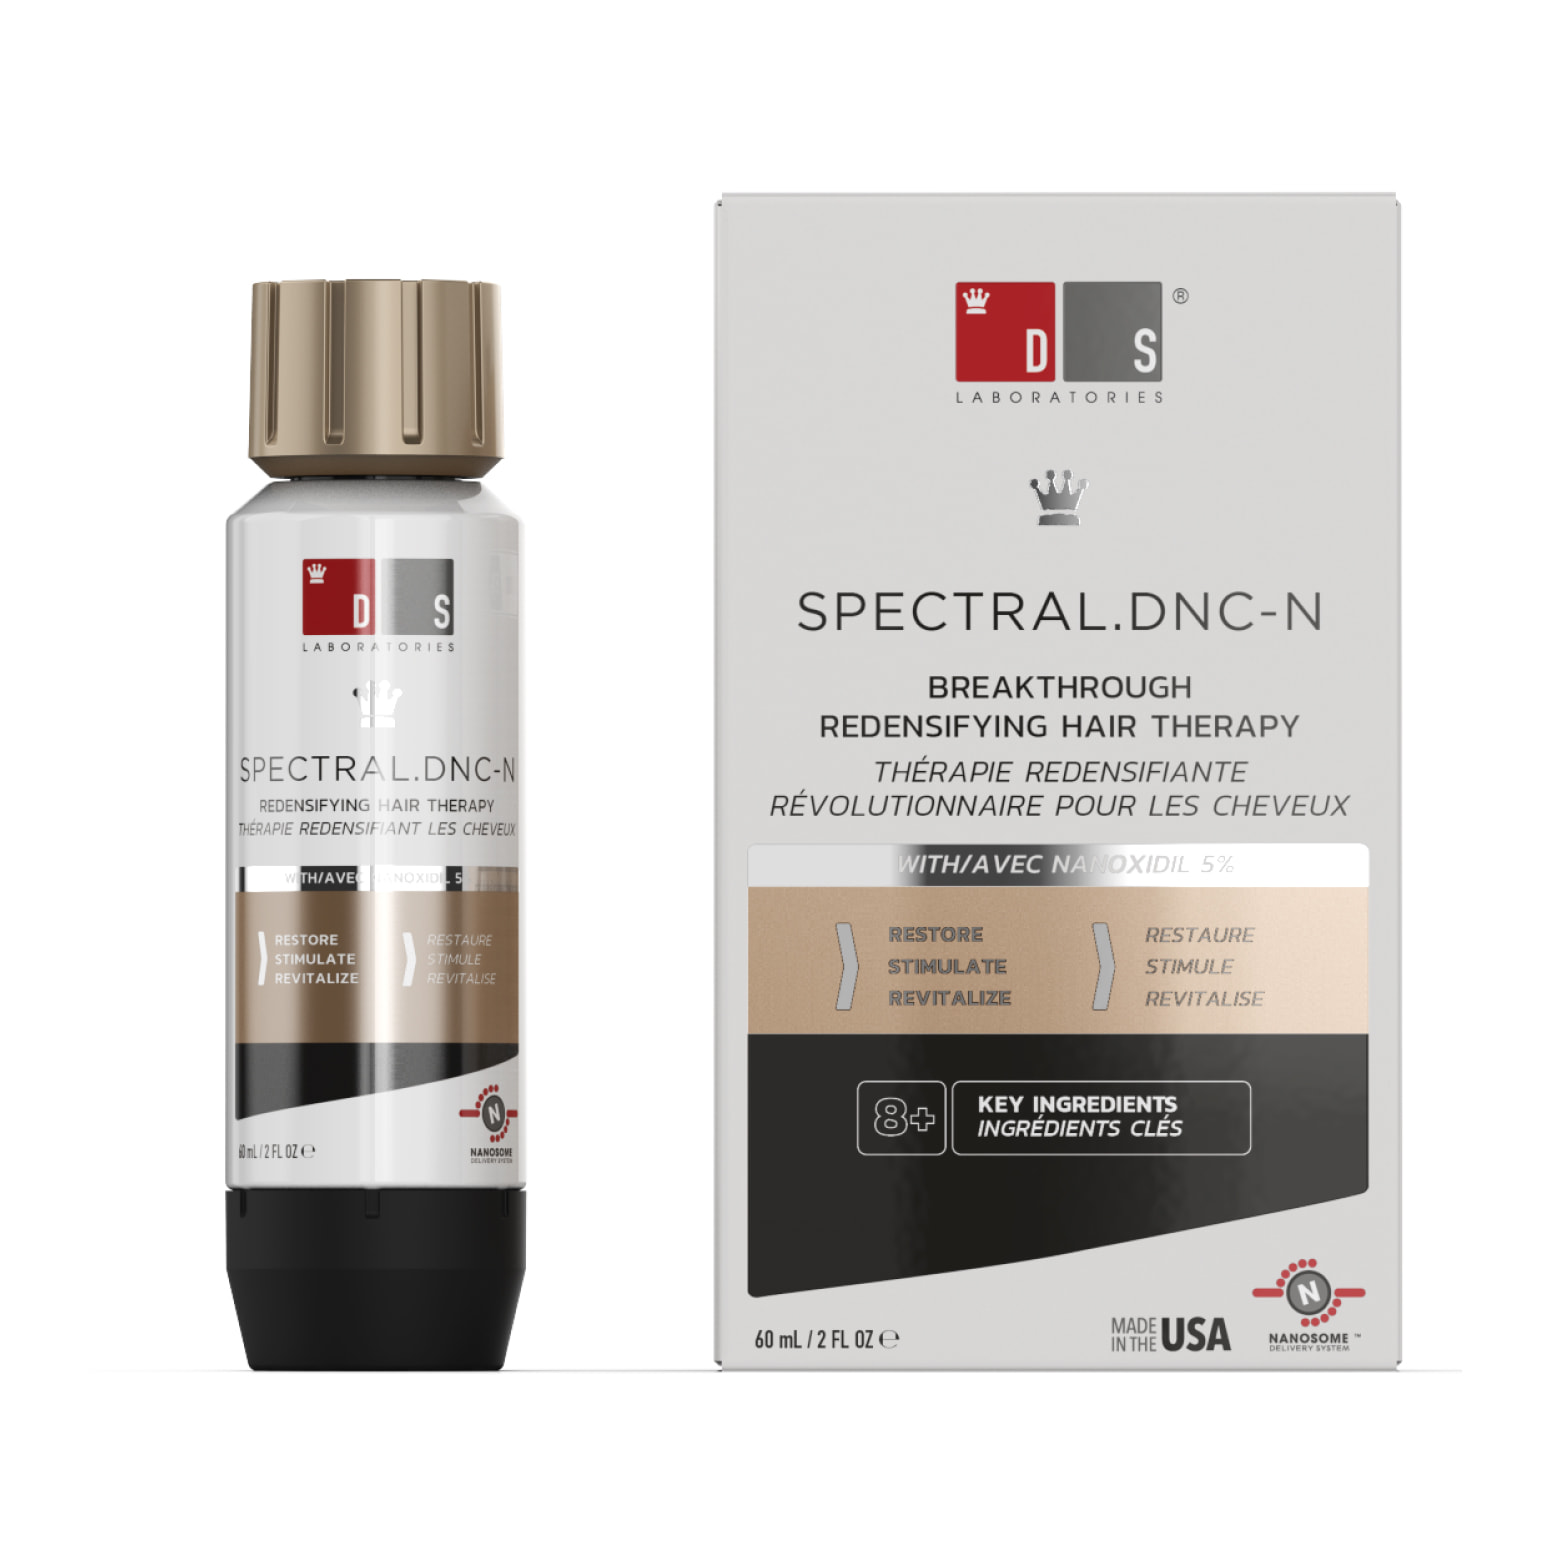 Spectral DNC-N (5% Nanoxidil) proti vypadávání vlasů